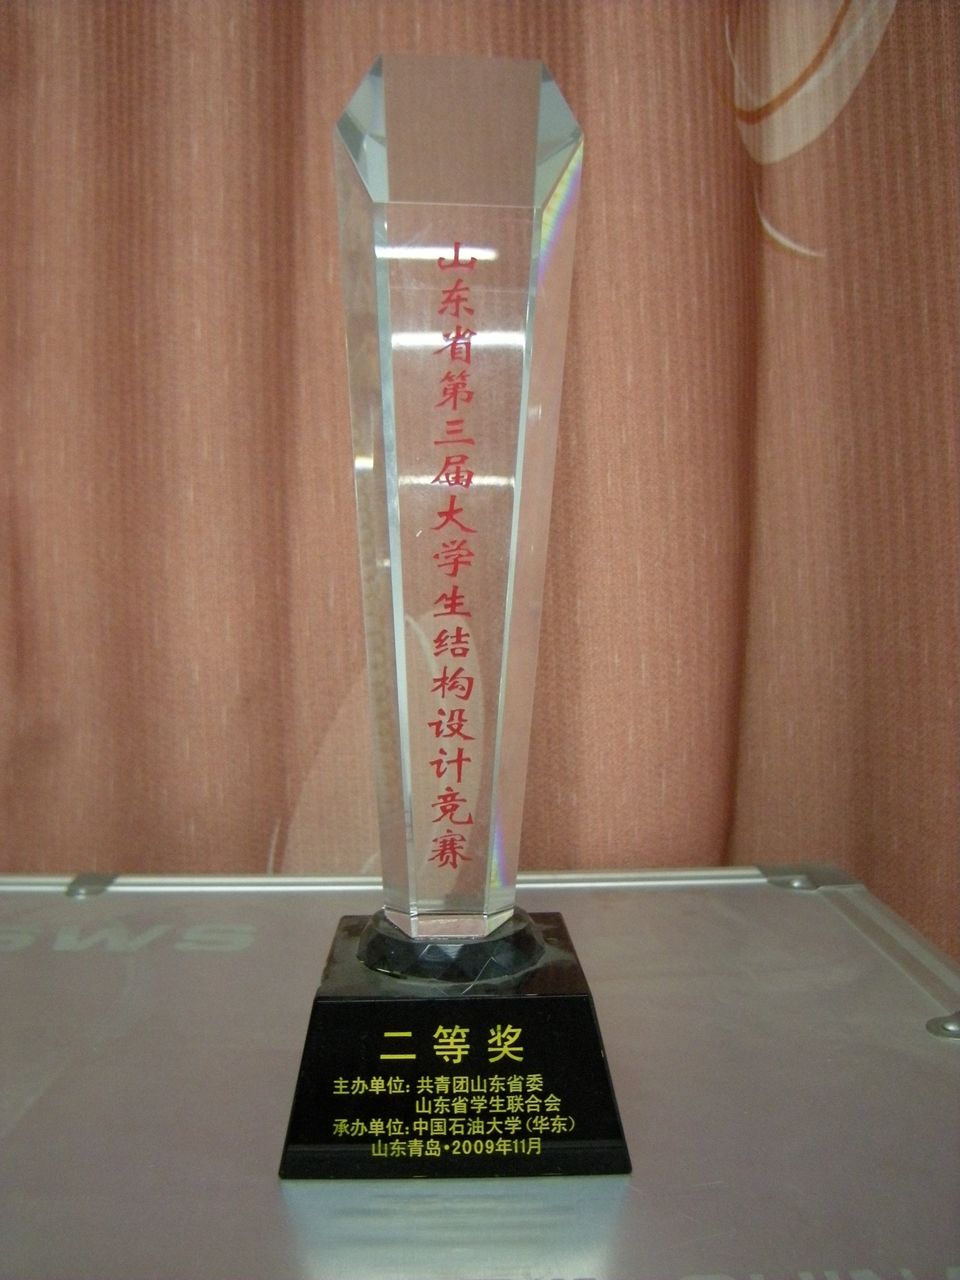 學社在山東省第三屆結構設計大賽中獲二等獎